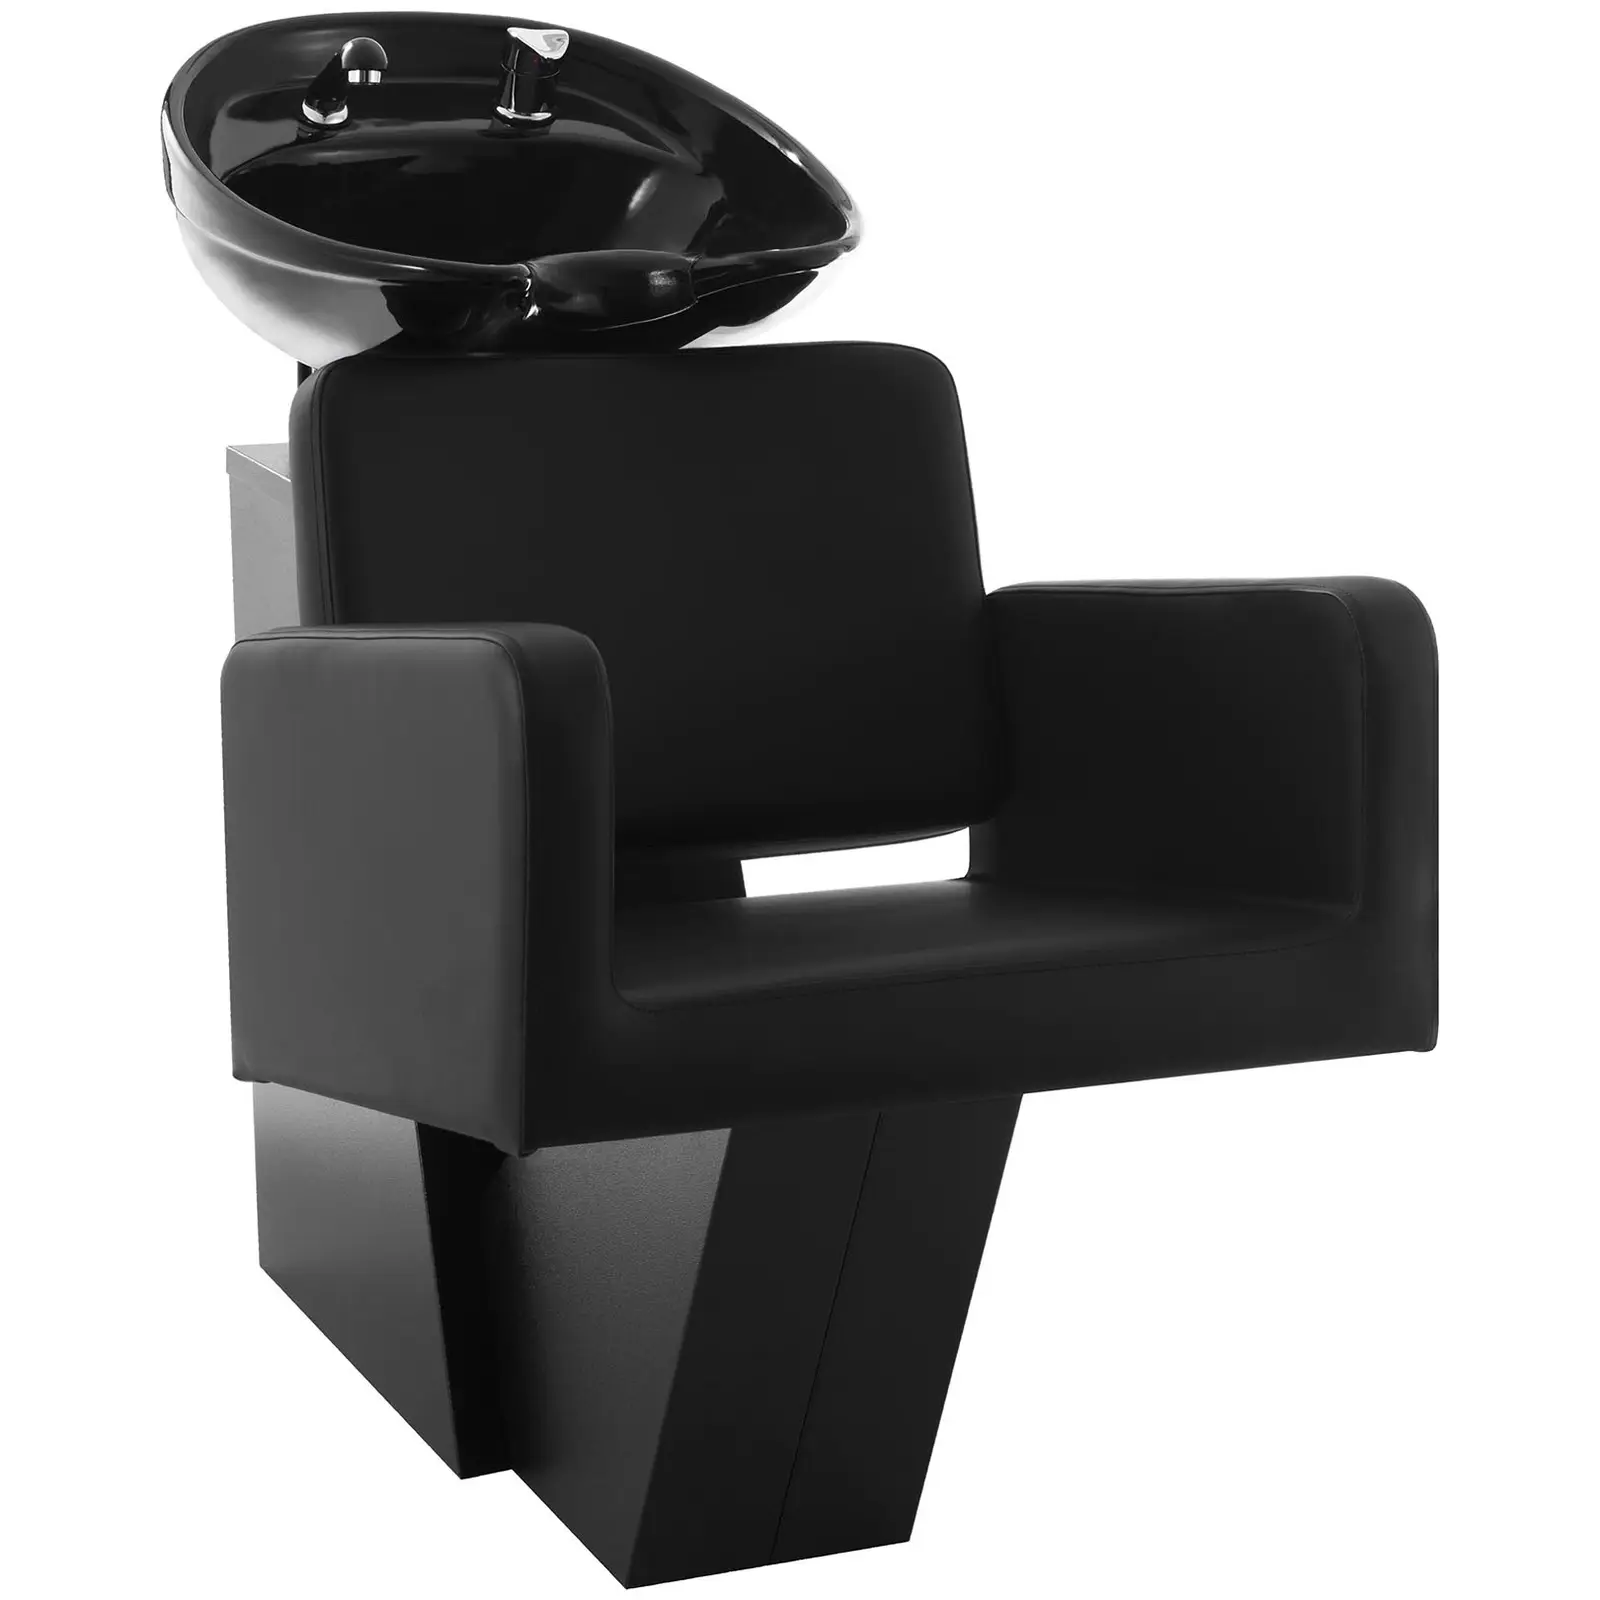 Fodrász fejmosó fotellel - 600x505 mm -  Black